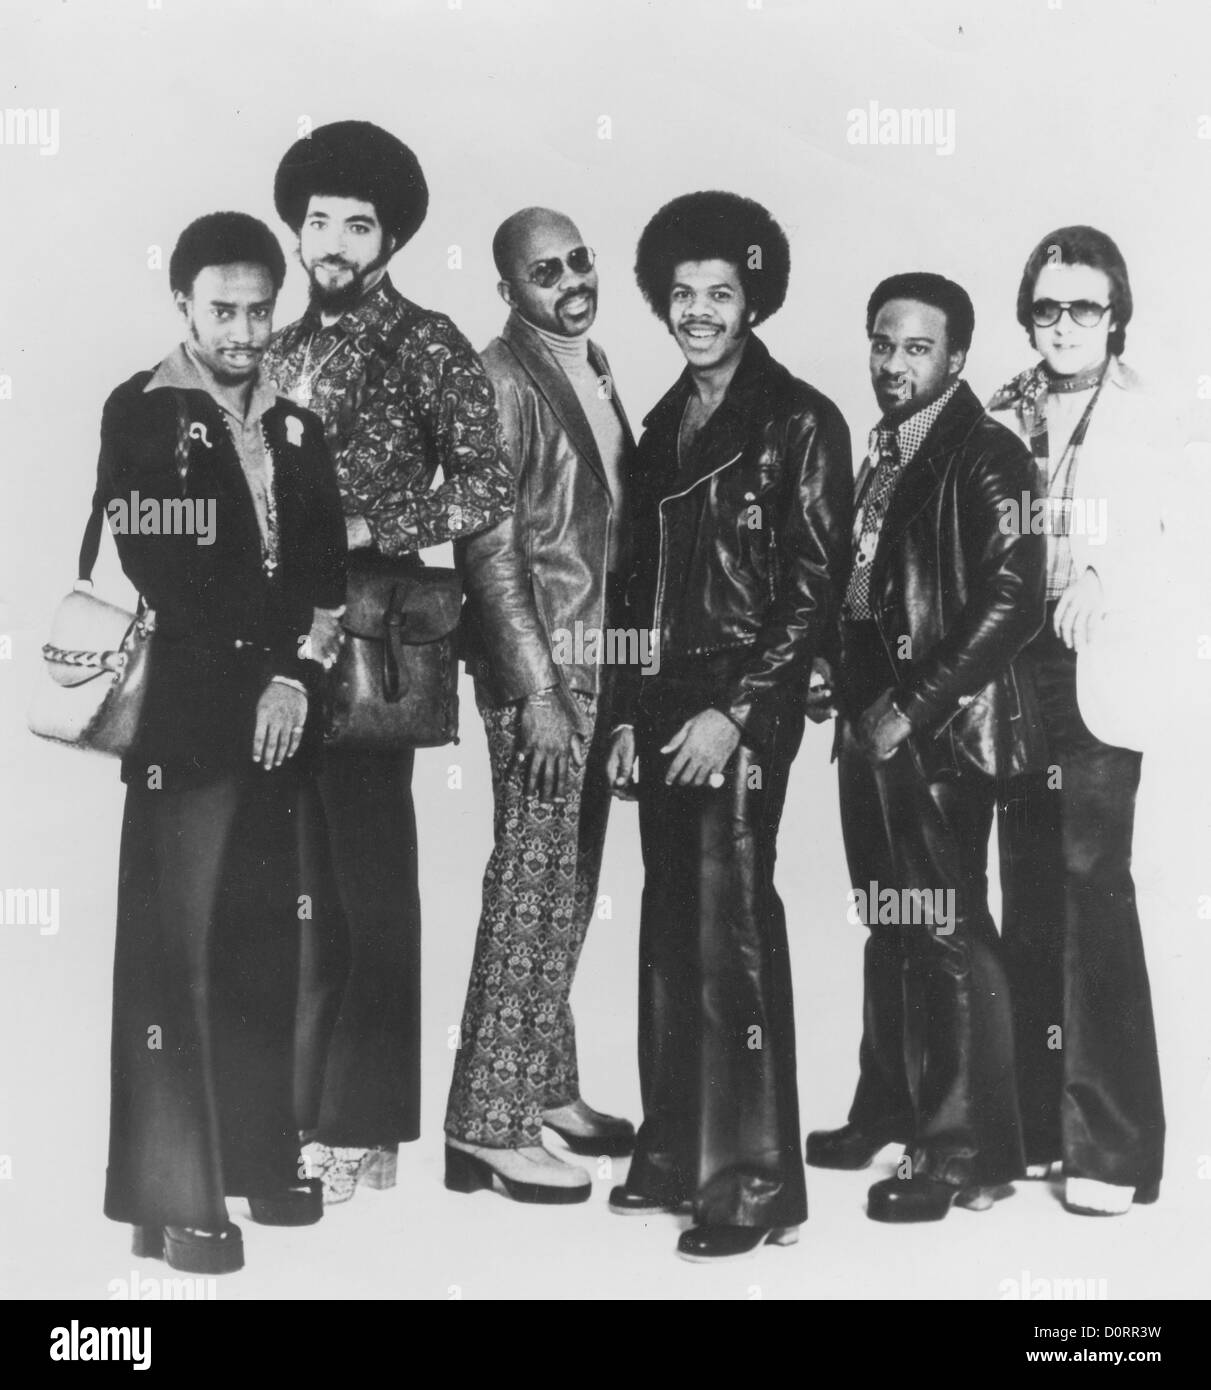 JIMMY CASTOR BUNCH photo promotionnelle d'entre nous à propos du groupe de musique funk 1972 avec roue de troisième à partir de la droite Banque D'Images